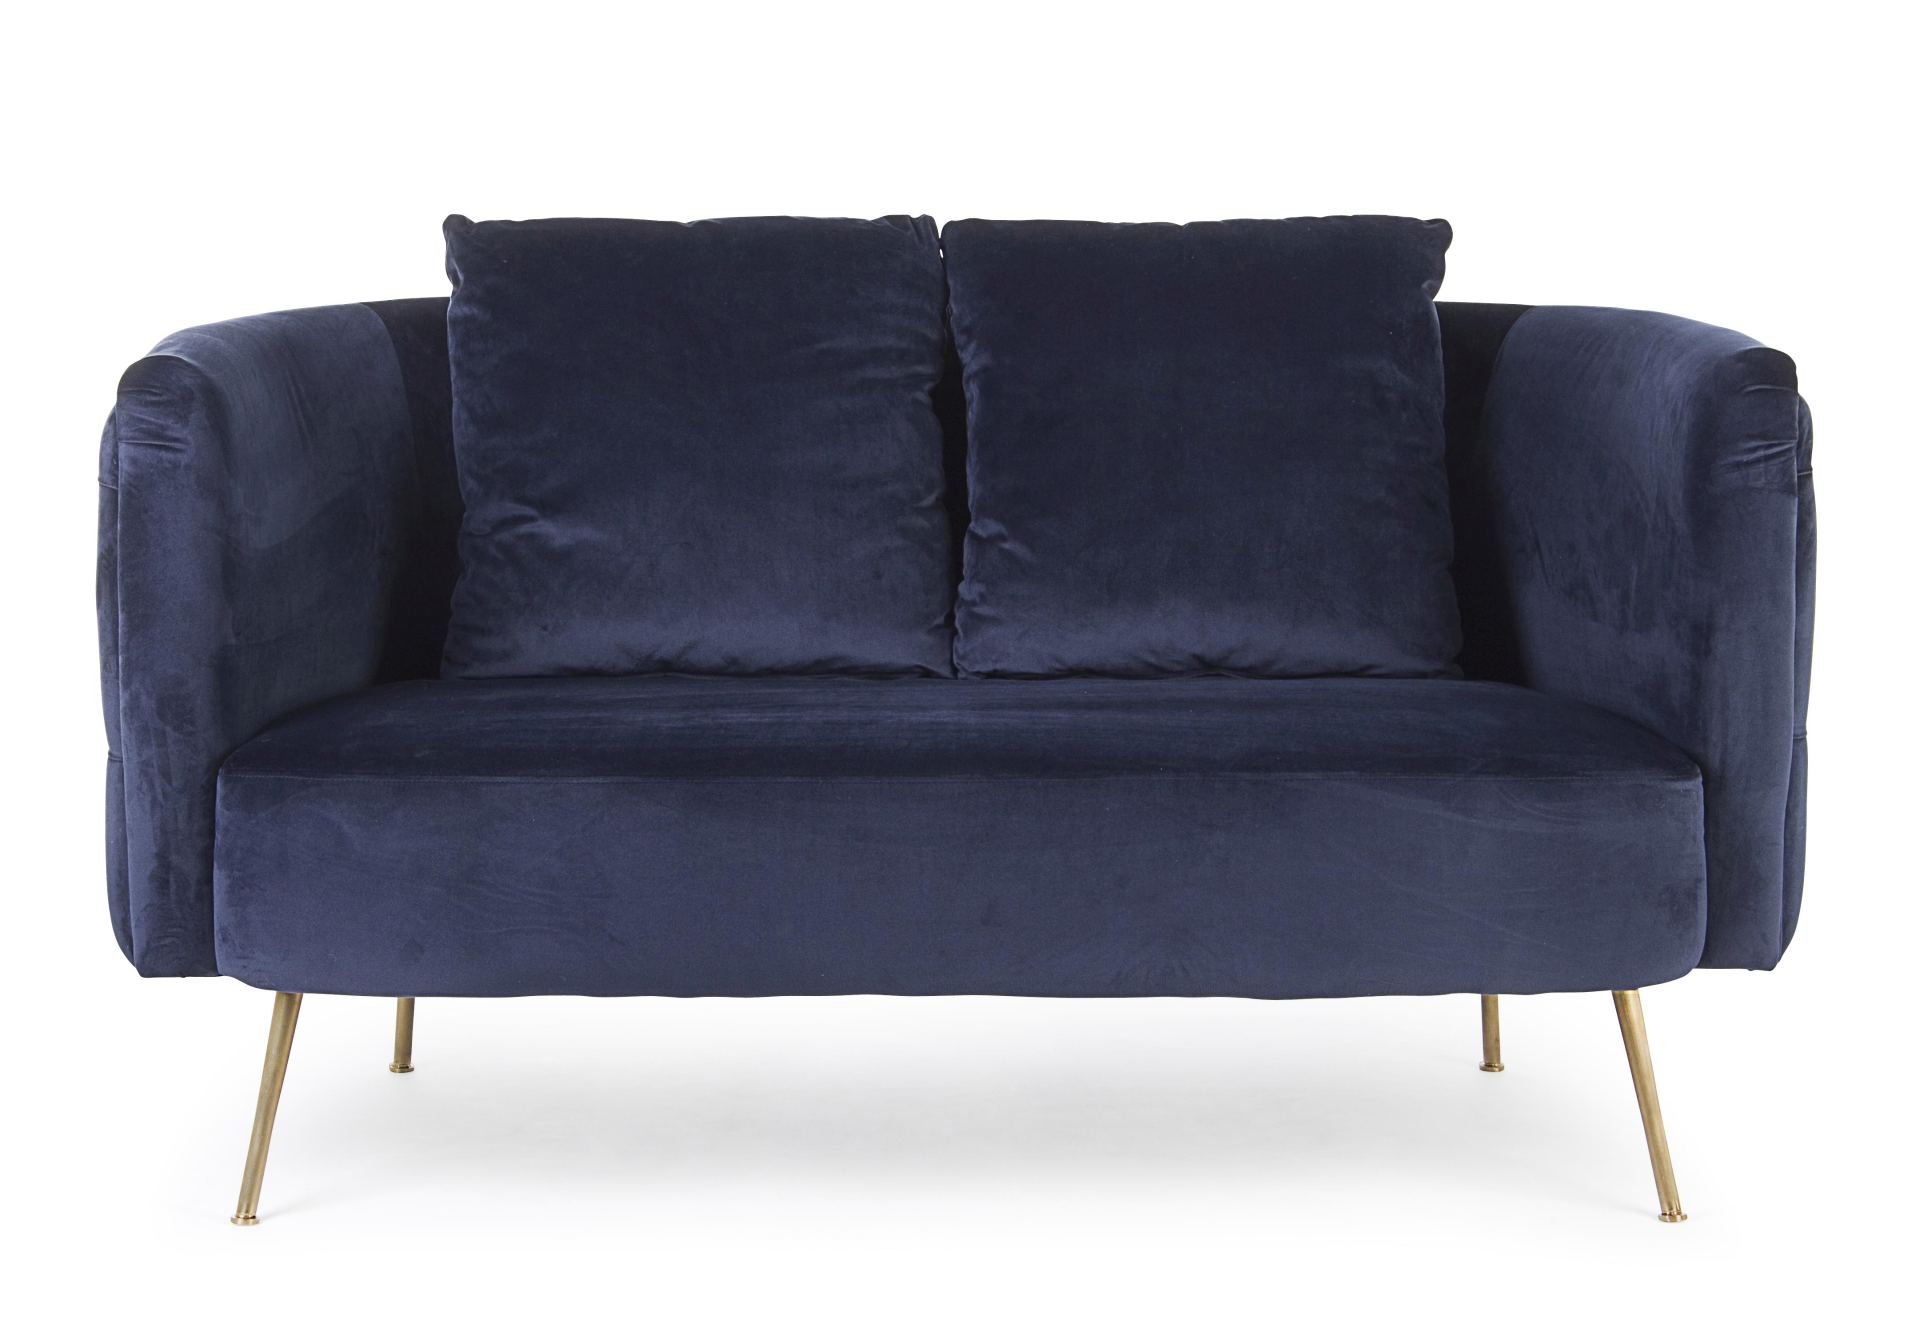 Das Sofa Tenbury überzeugt mit seinem modernen Design. Gefertigt wurde es aus Stoff in Samt-Optik, welcher einen blauen Farbton besitzt. Das Gestell ist aus Metall und hat eine goldene Farbe. Das Sofa ist in der Ausführung als 2-Sitzer. Die Breite beträgt